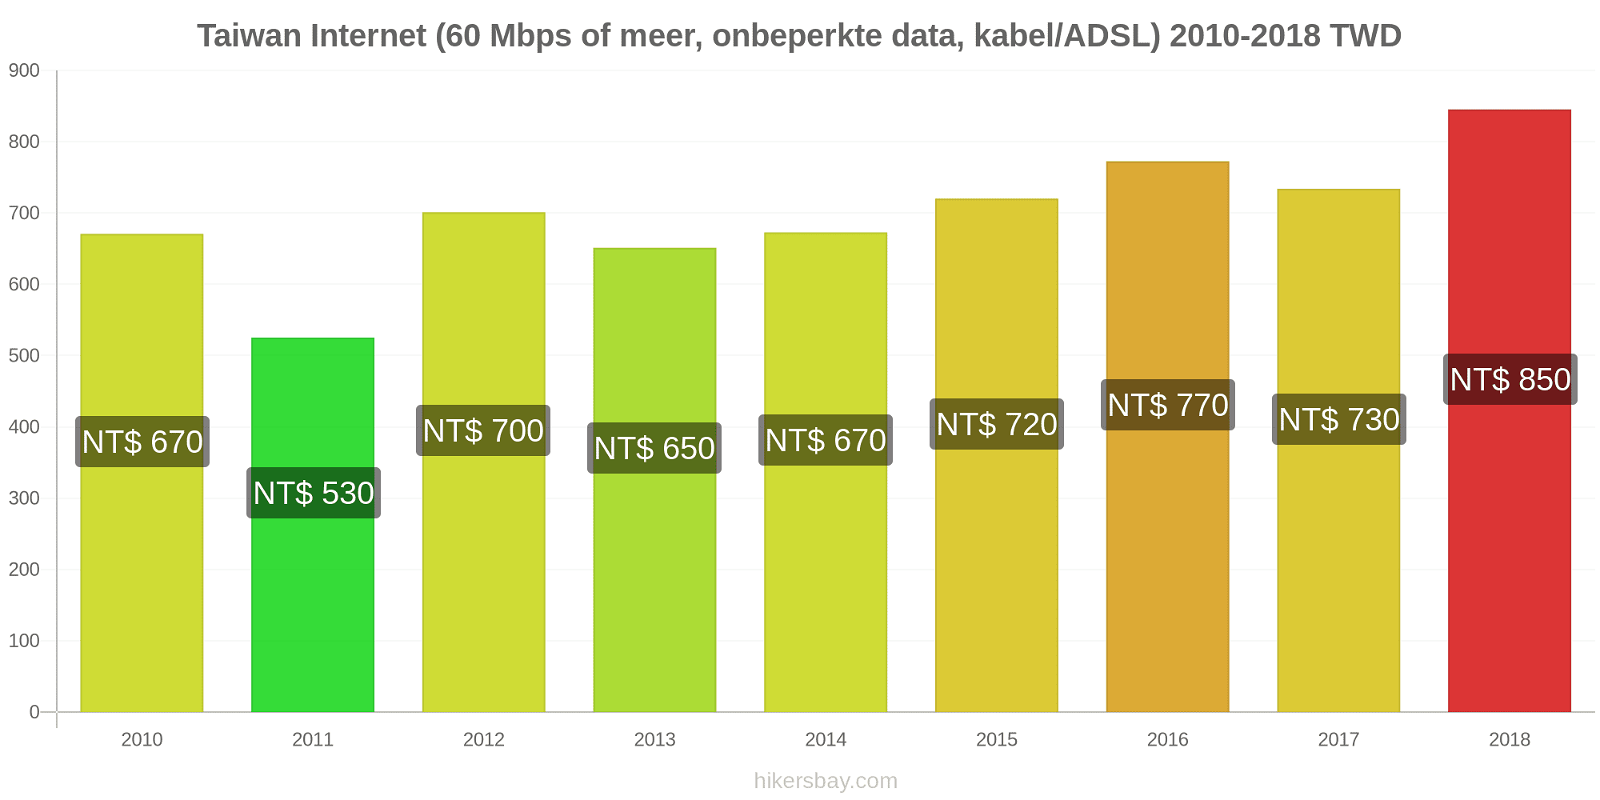 Taiwan prijswijzigingen Internet (60 Mbps of meer, Onbeperkte Data, Kabel/ADSL) hikersbay.com